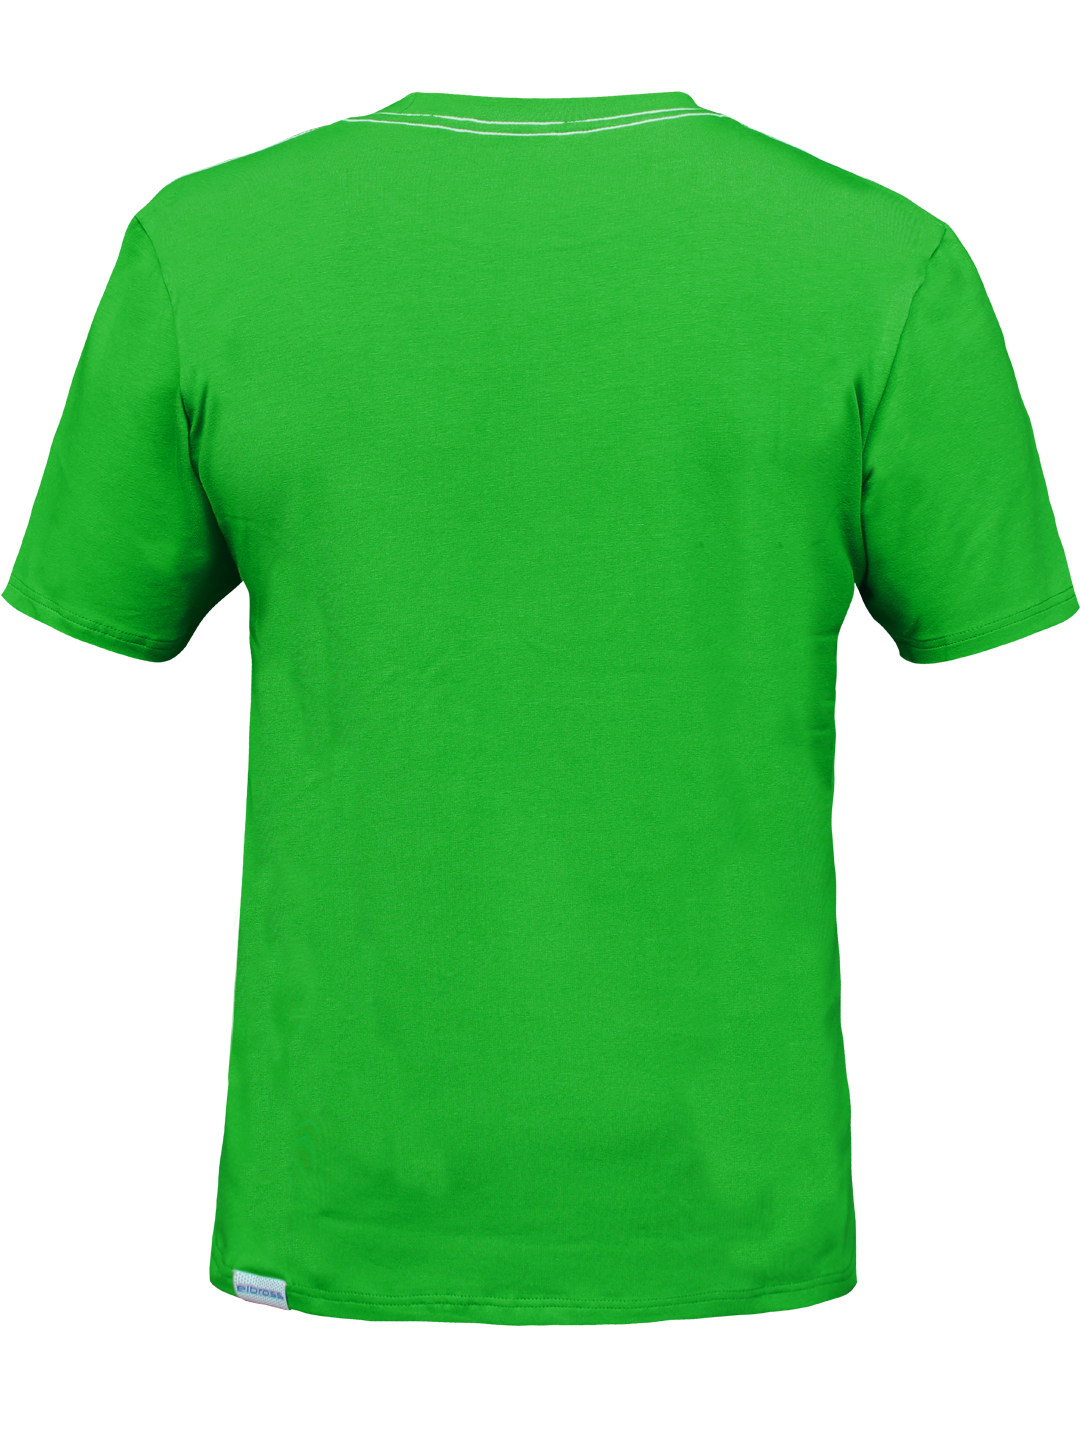 Outdoor Tişört Yeşil